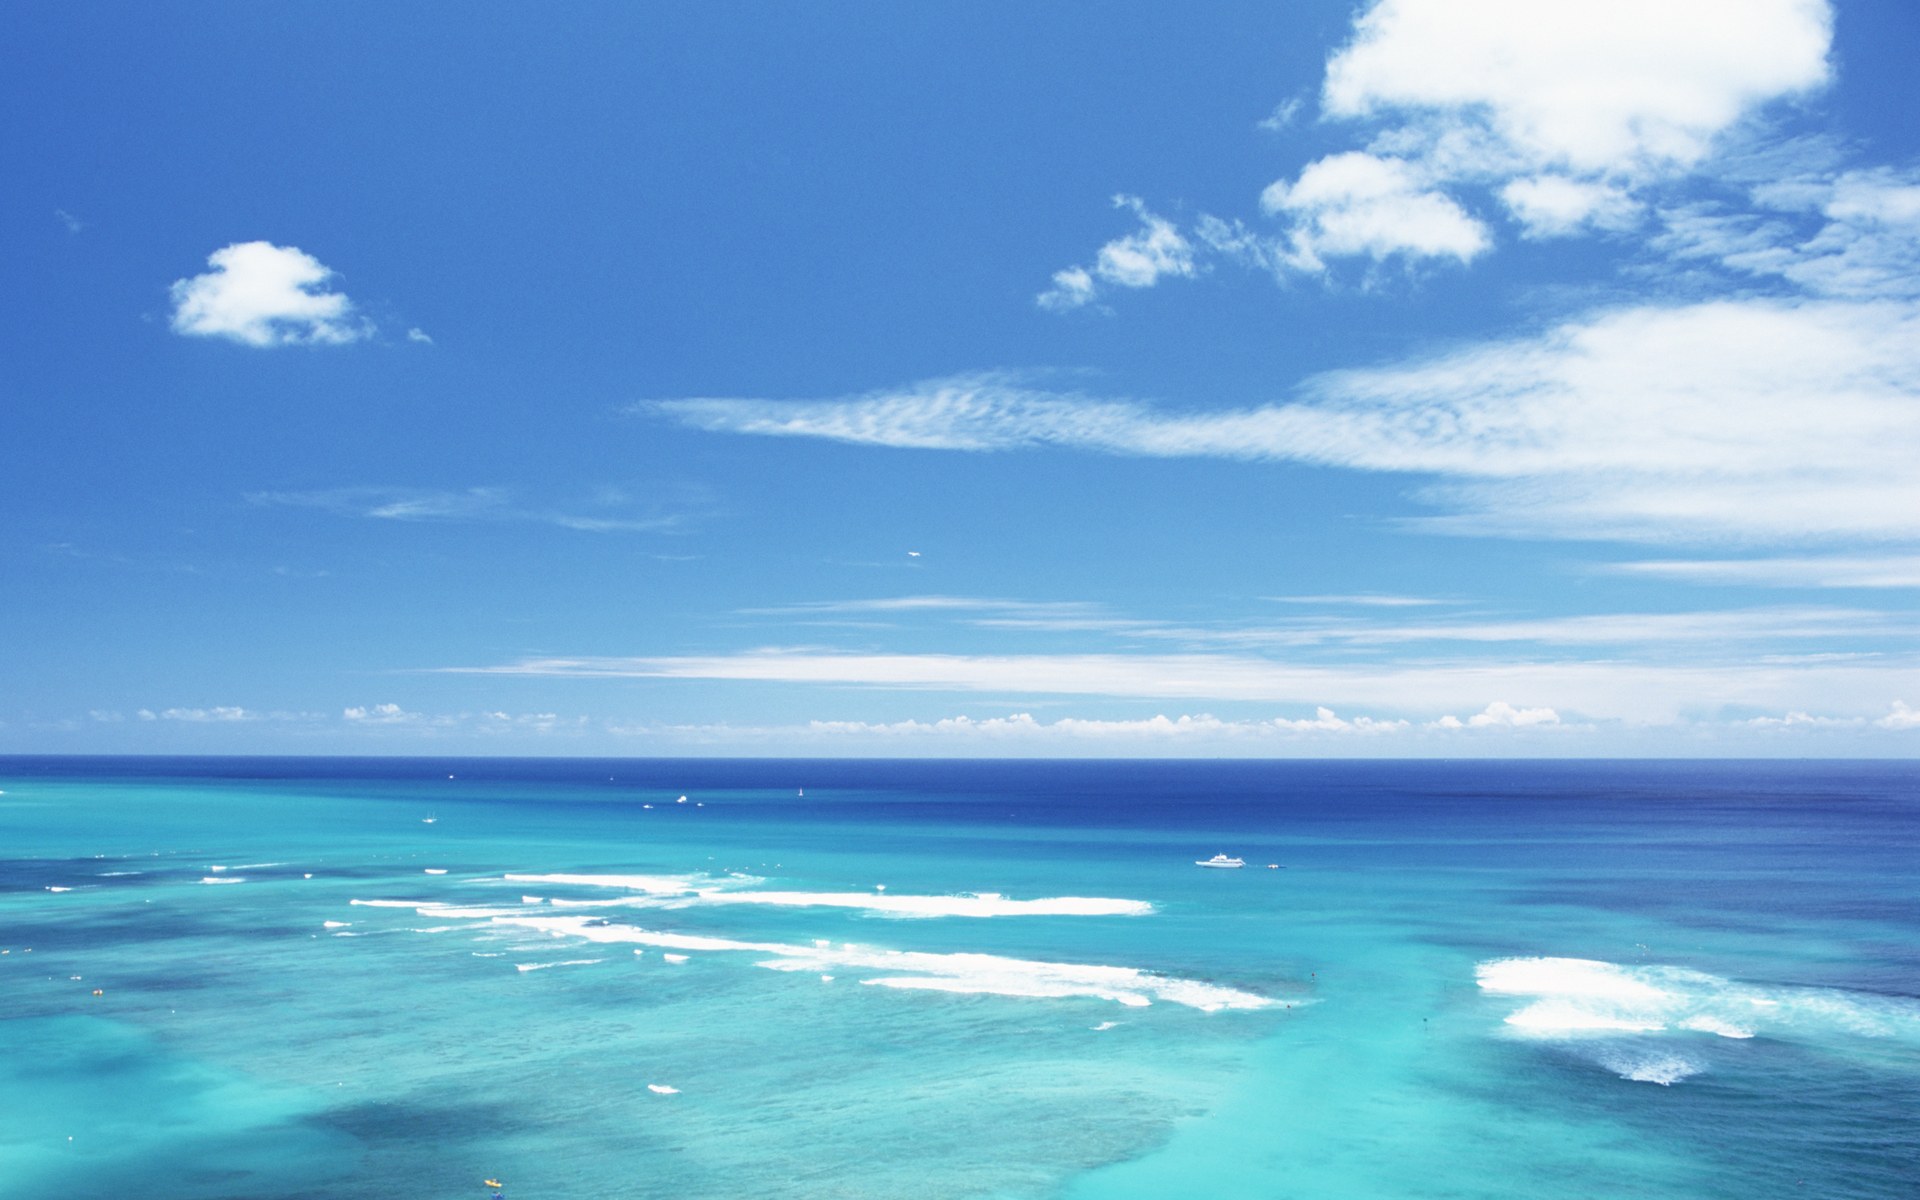 夏威夷的碧海蓝天 夏威夷海滩图片 蓝天碧海沙